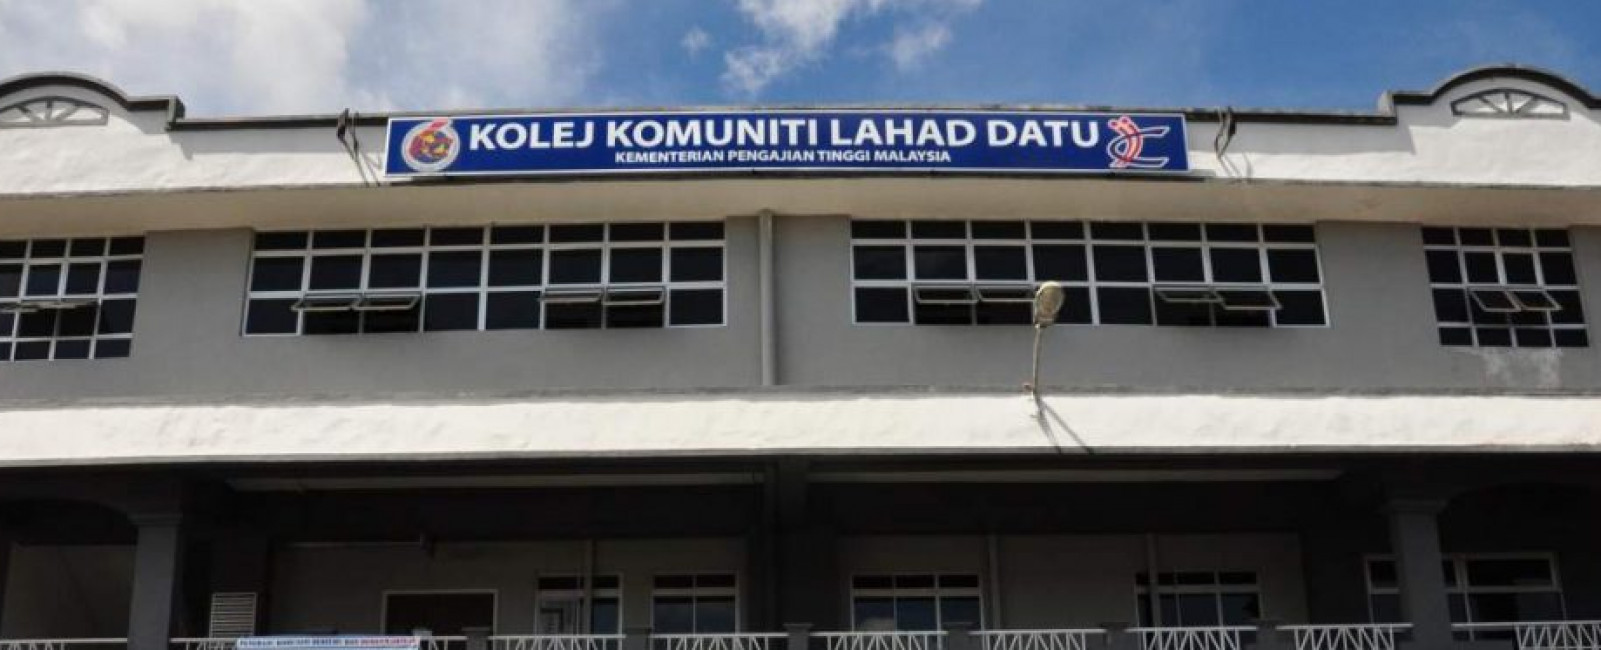 Kolej Komuniti Lahad Datu Malaytng